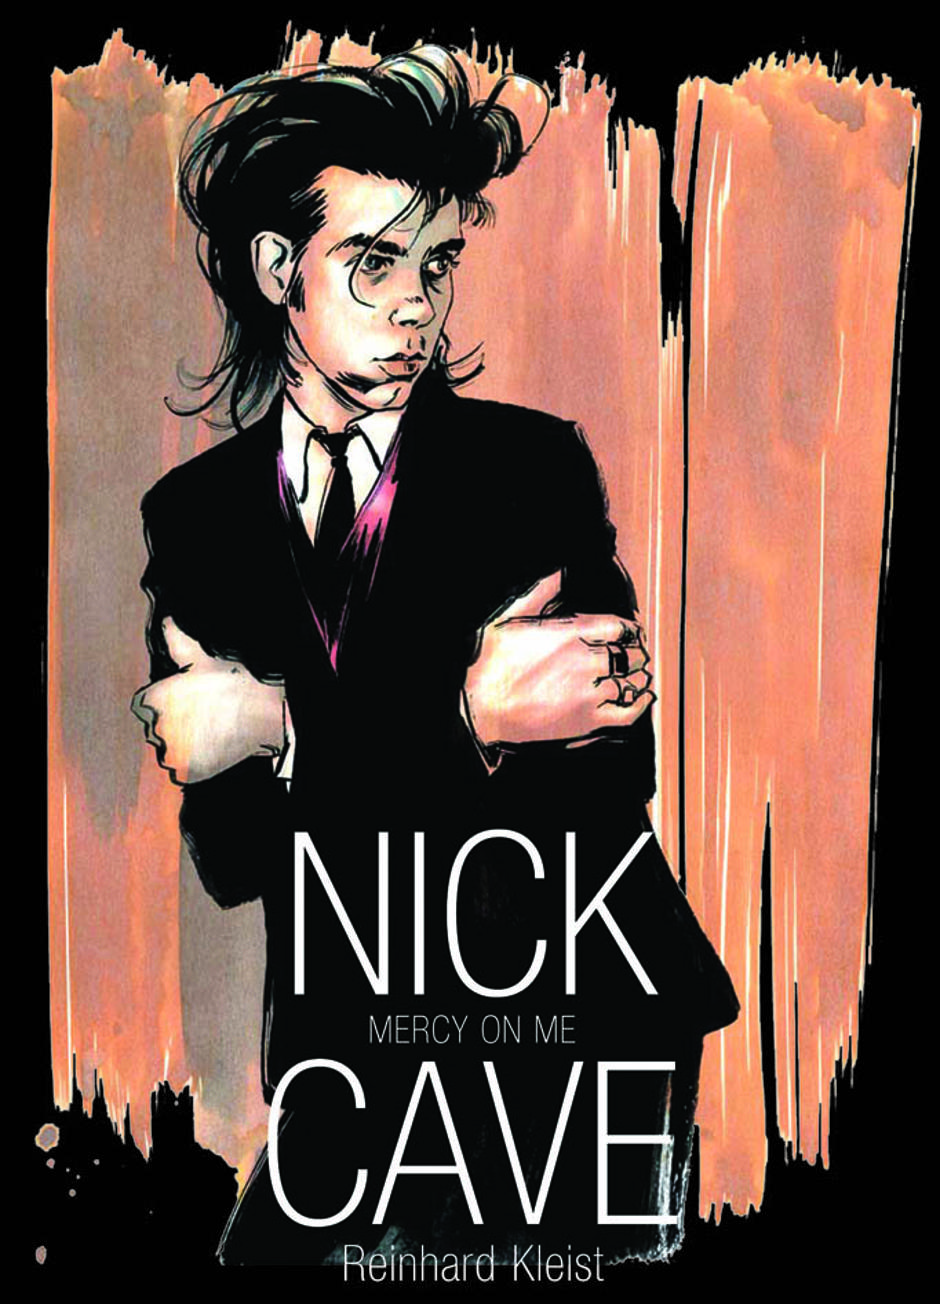 Nick Cave u knjizi "Nick Cave - Mercy On me" Reinharda Kleista | Author: Strip Centar Tino